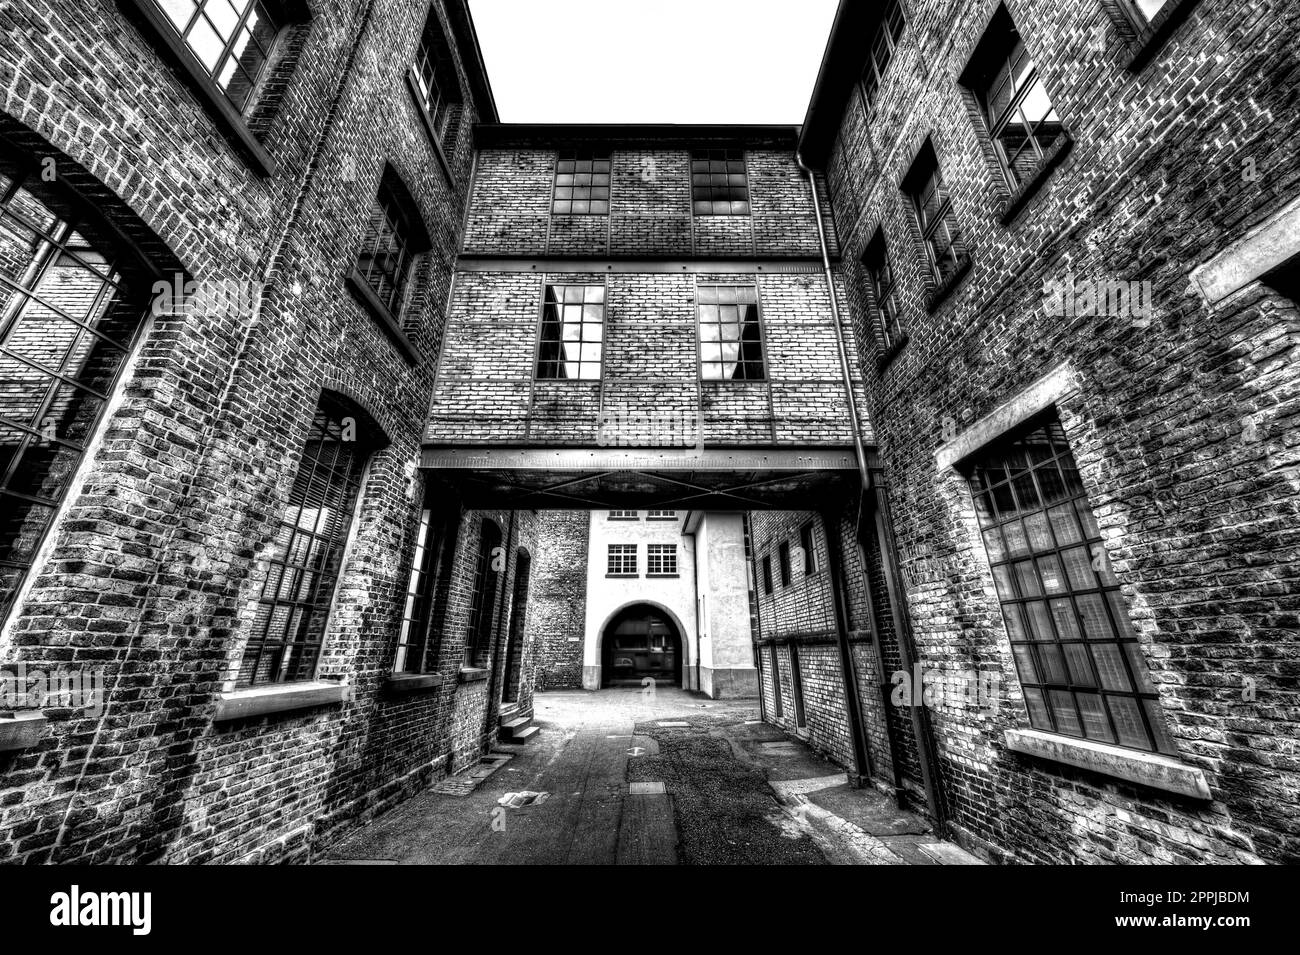 Der Durchgang zwischen zwei Ziegelhäusern im Hinterhof einer Fabrik in Schwarz-Weiß Stockfoto